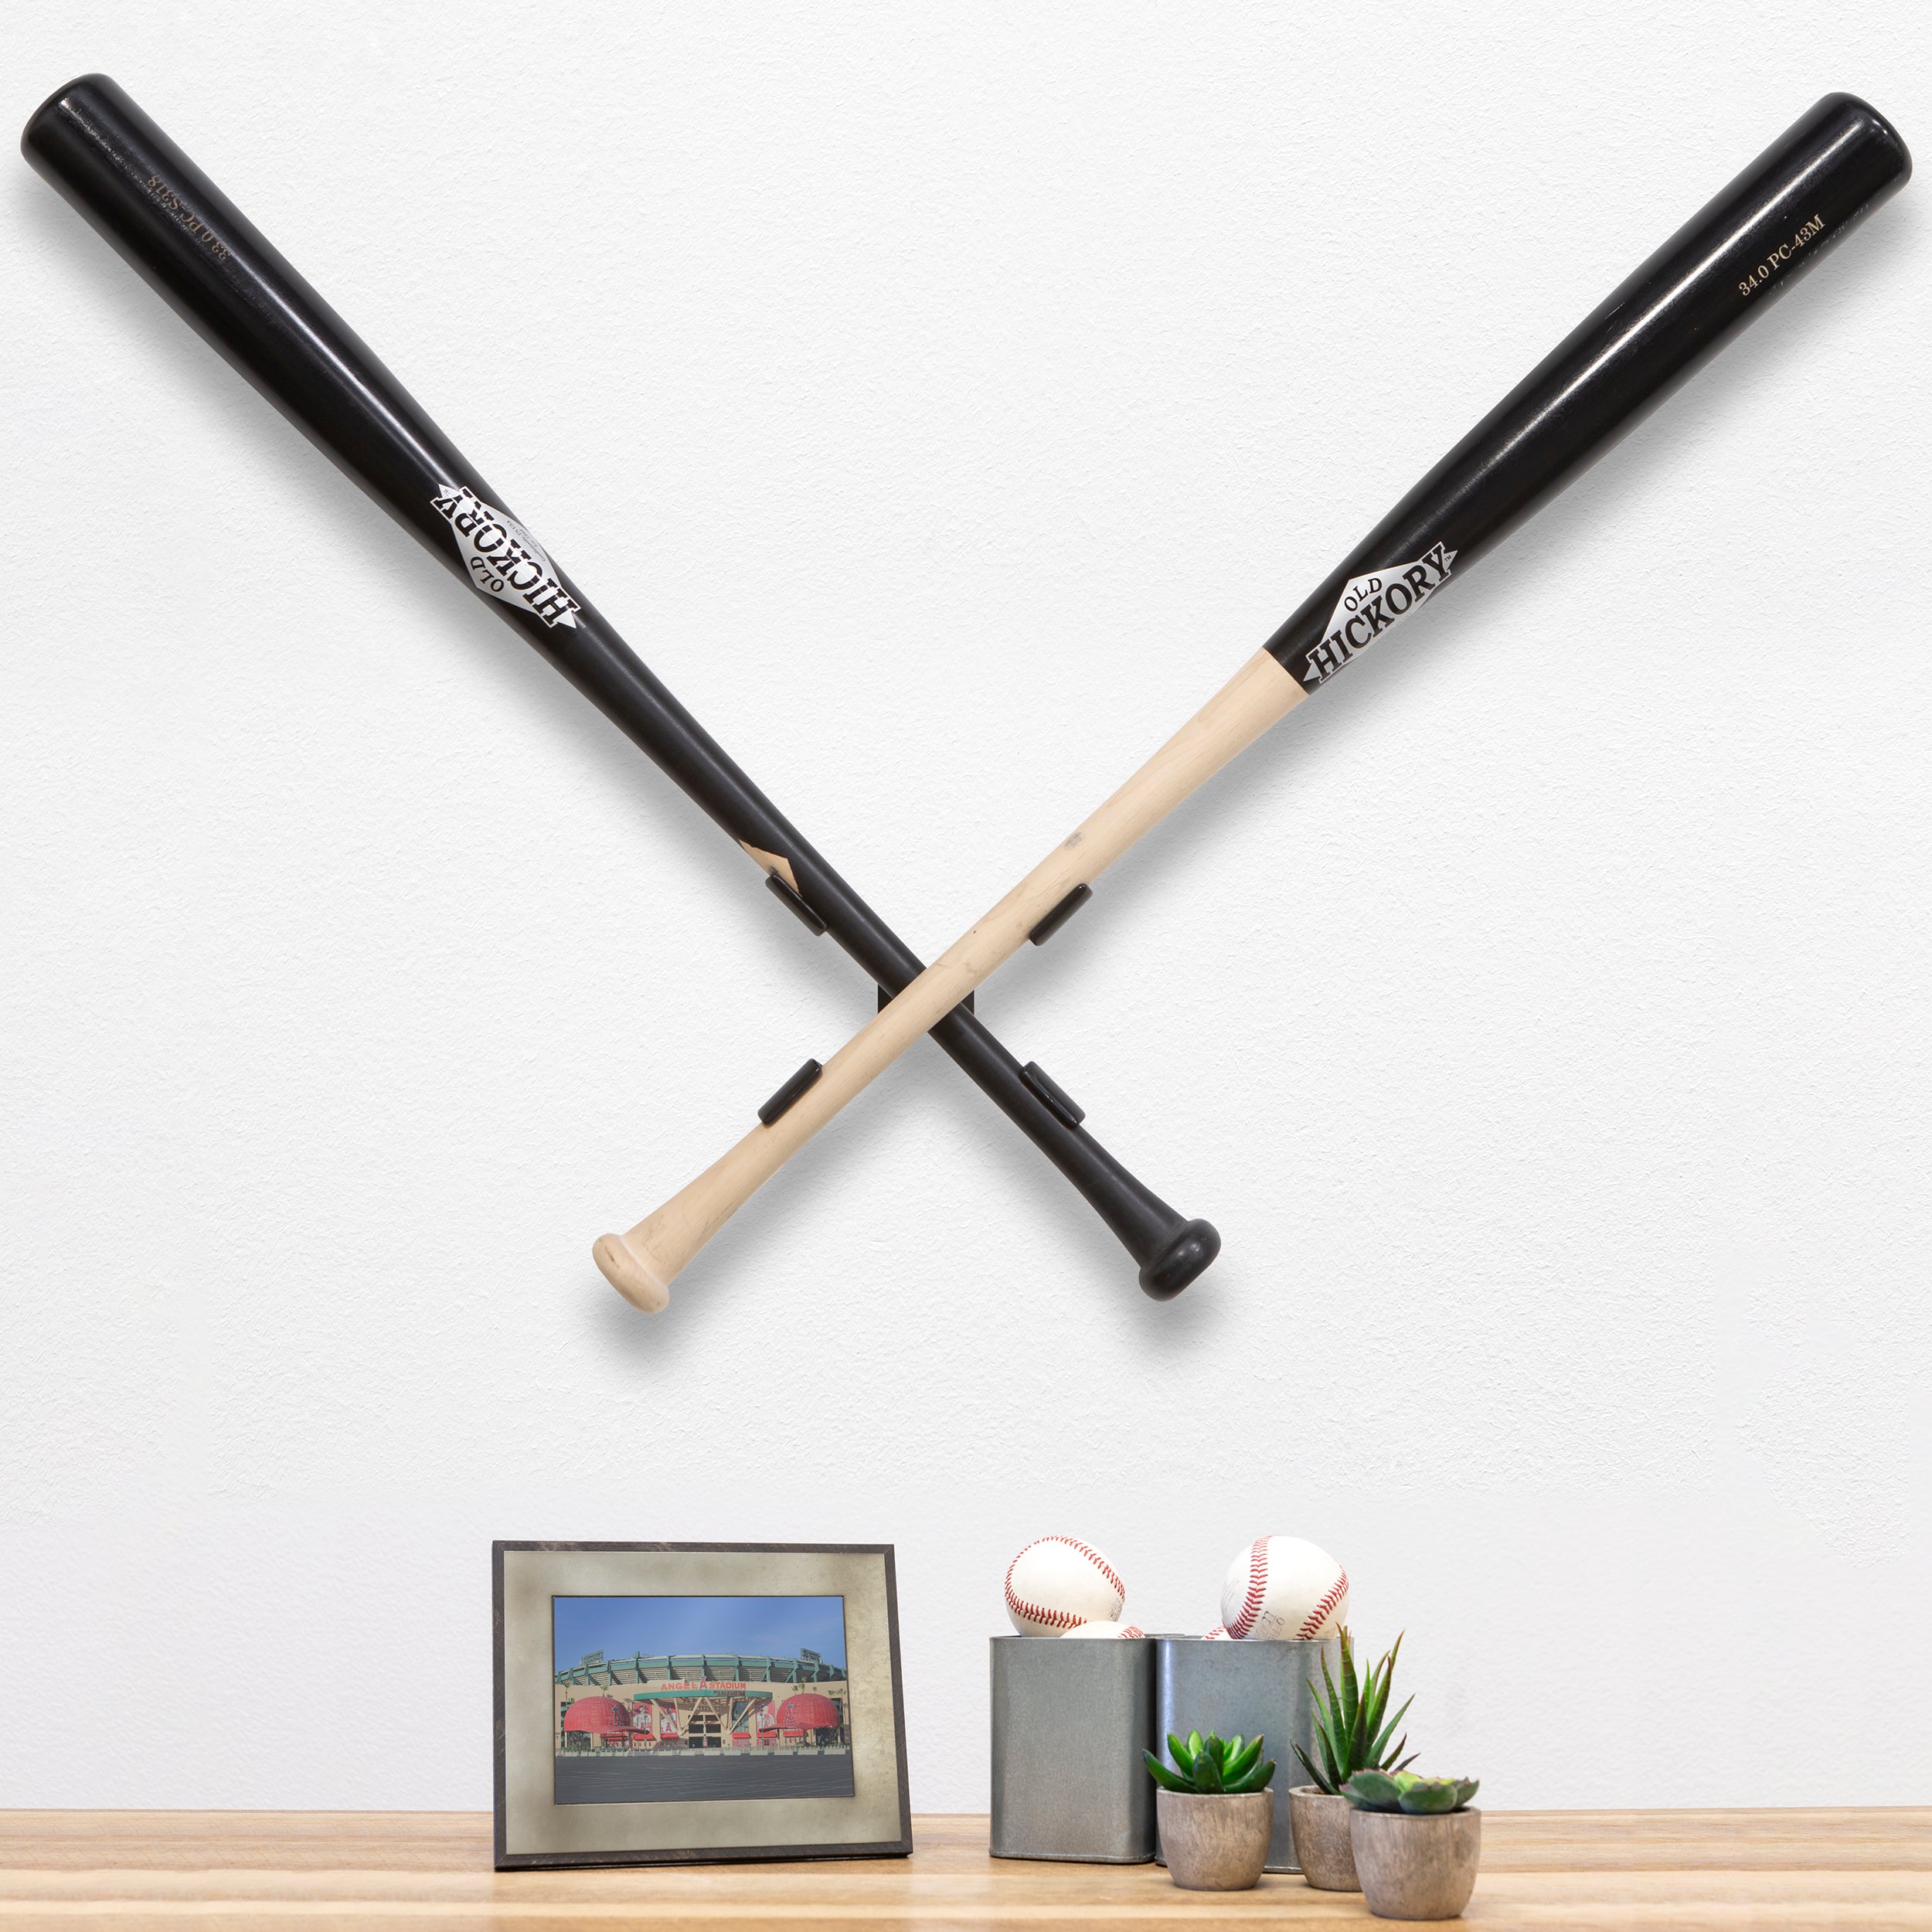 HIDEit XBat Crossed Baseball Bat Mount in a room.